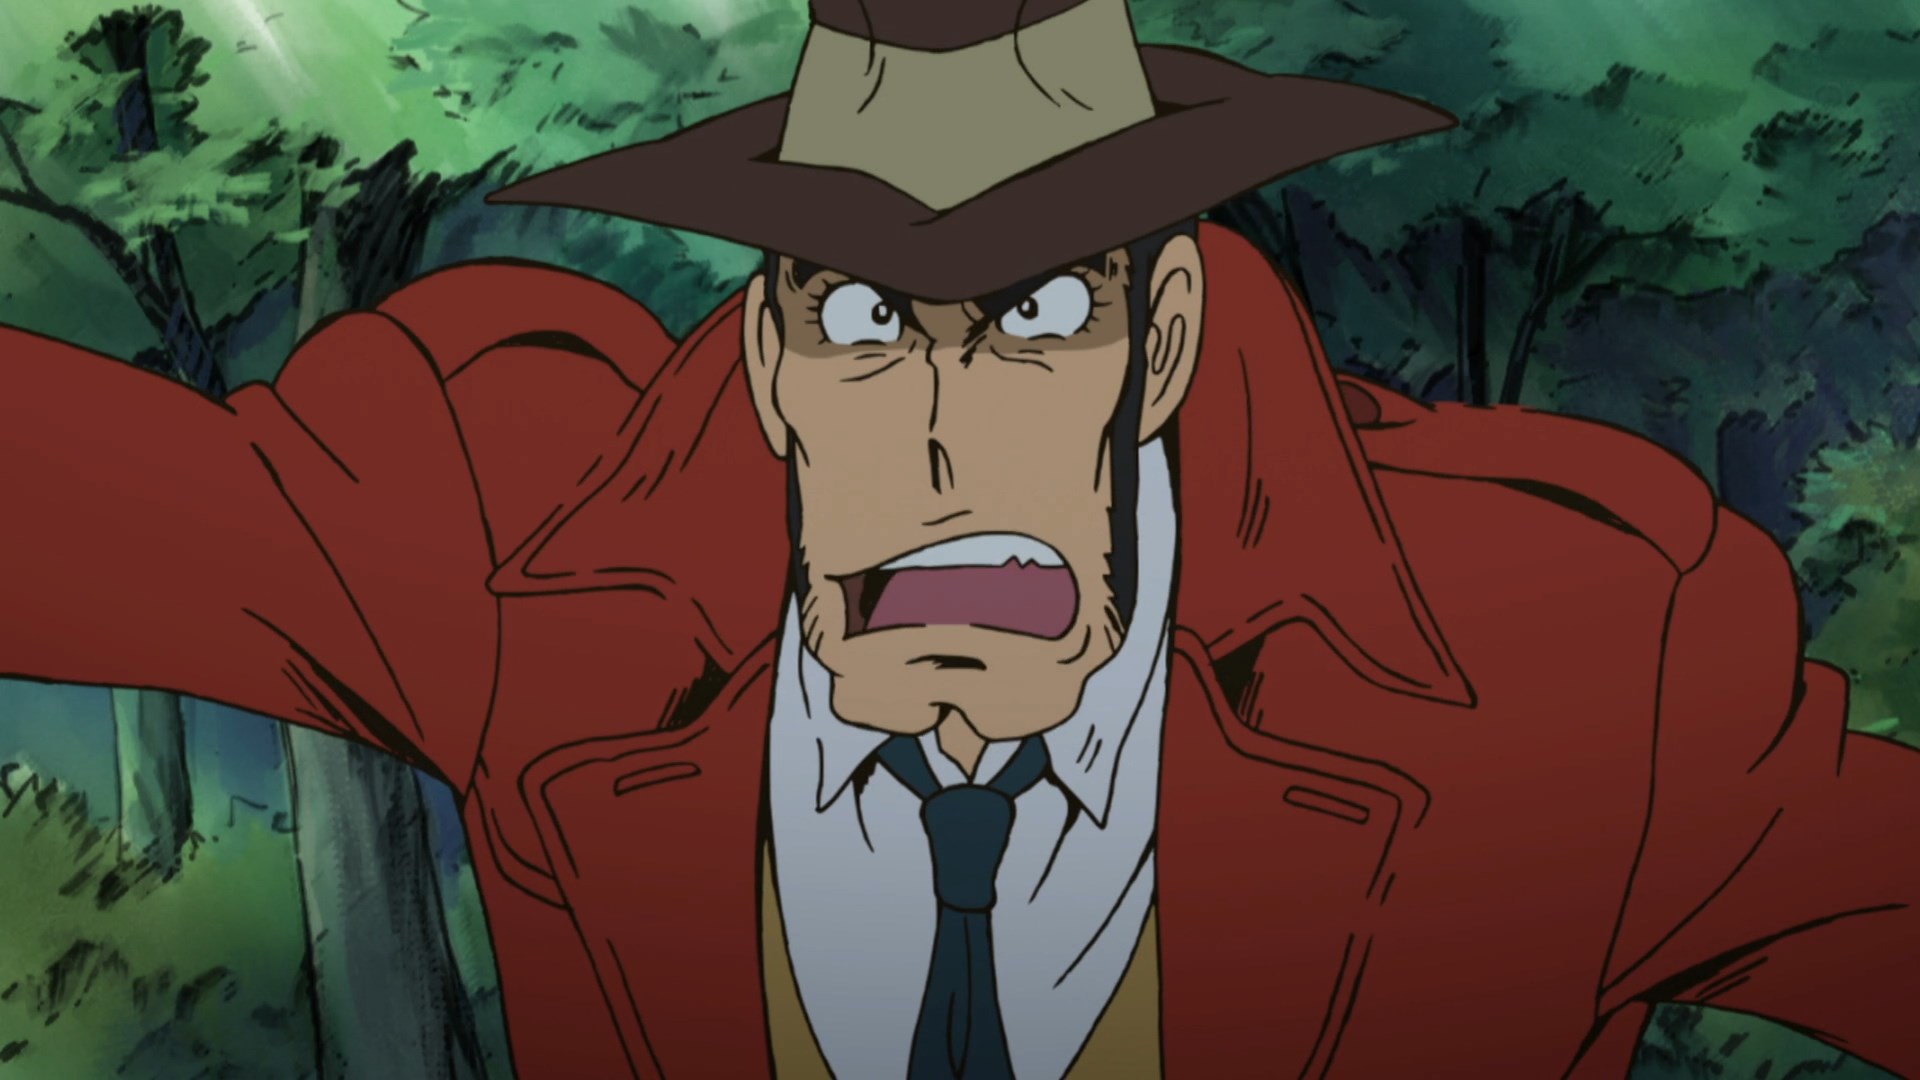 Inspector Zenigata, Lupin the Third